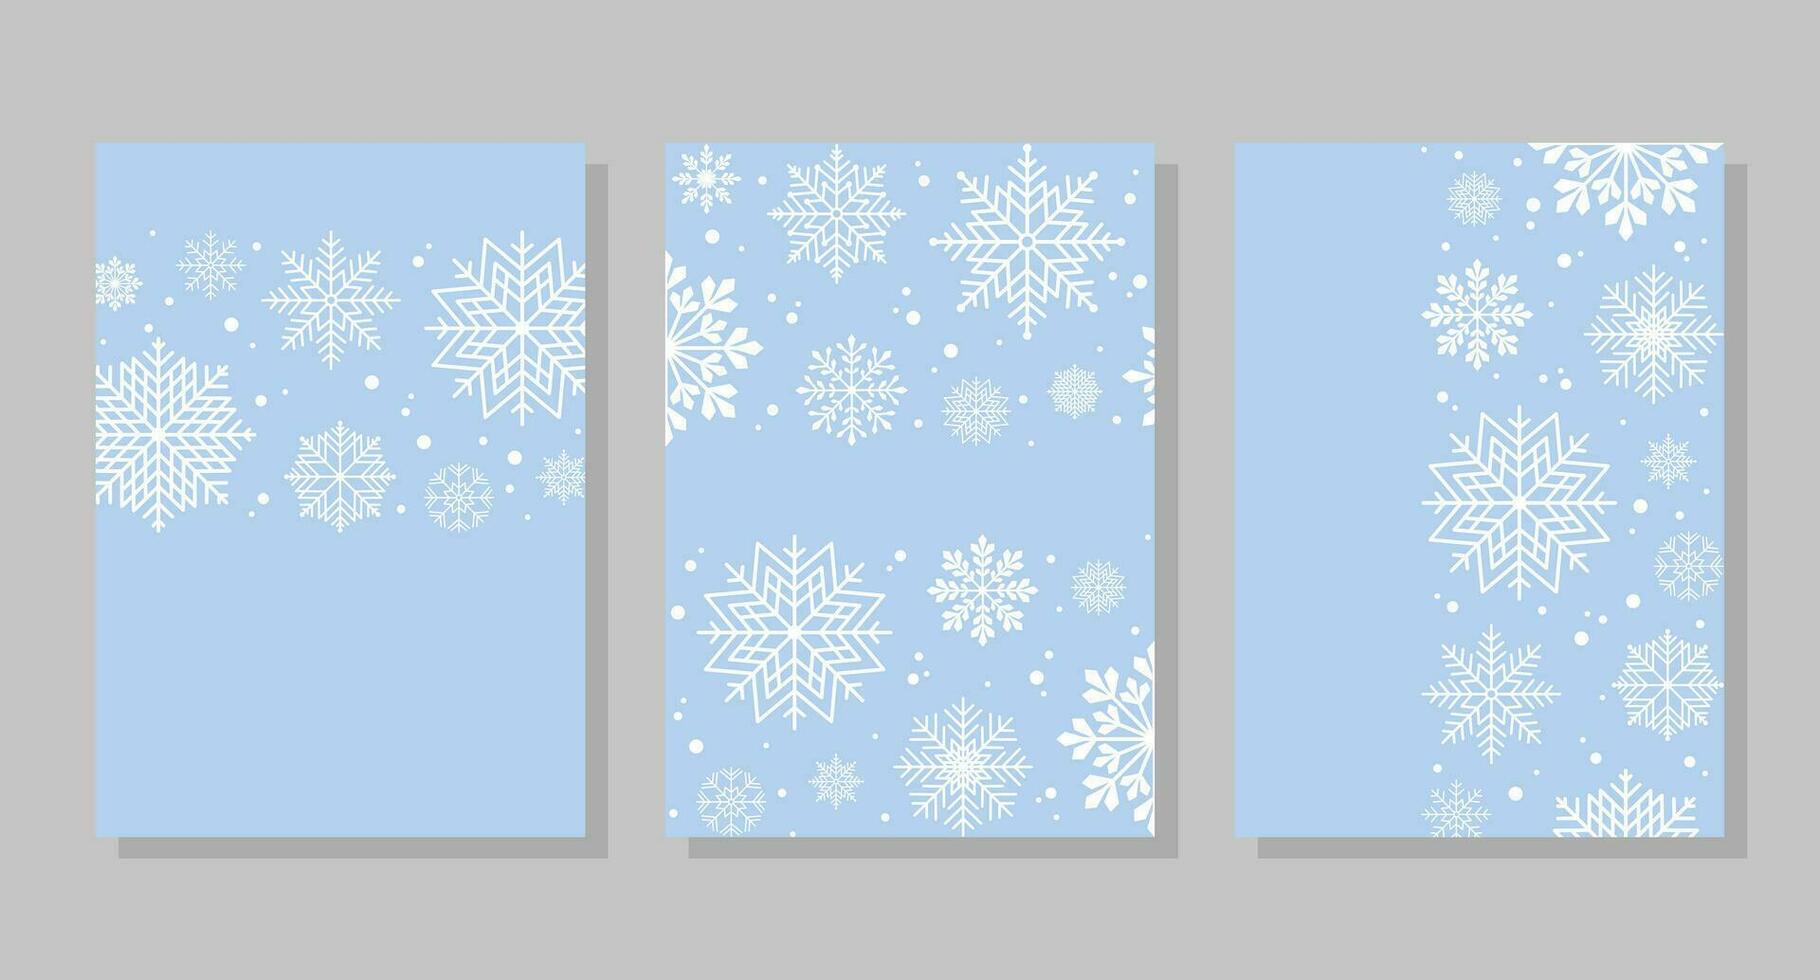 vinter- bakgrunder med snöflingor och snö, ramar. vektor illustration. social media baner mall för berättelser, inlägg, bloggar, kort.